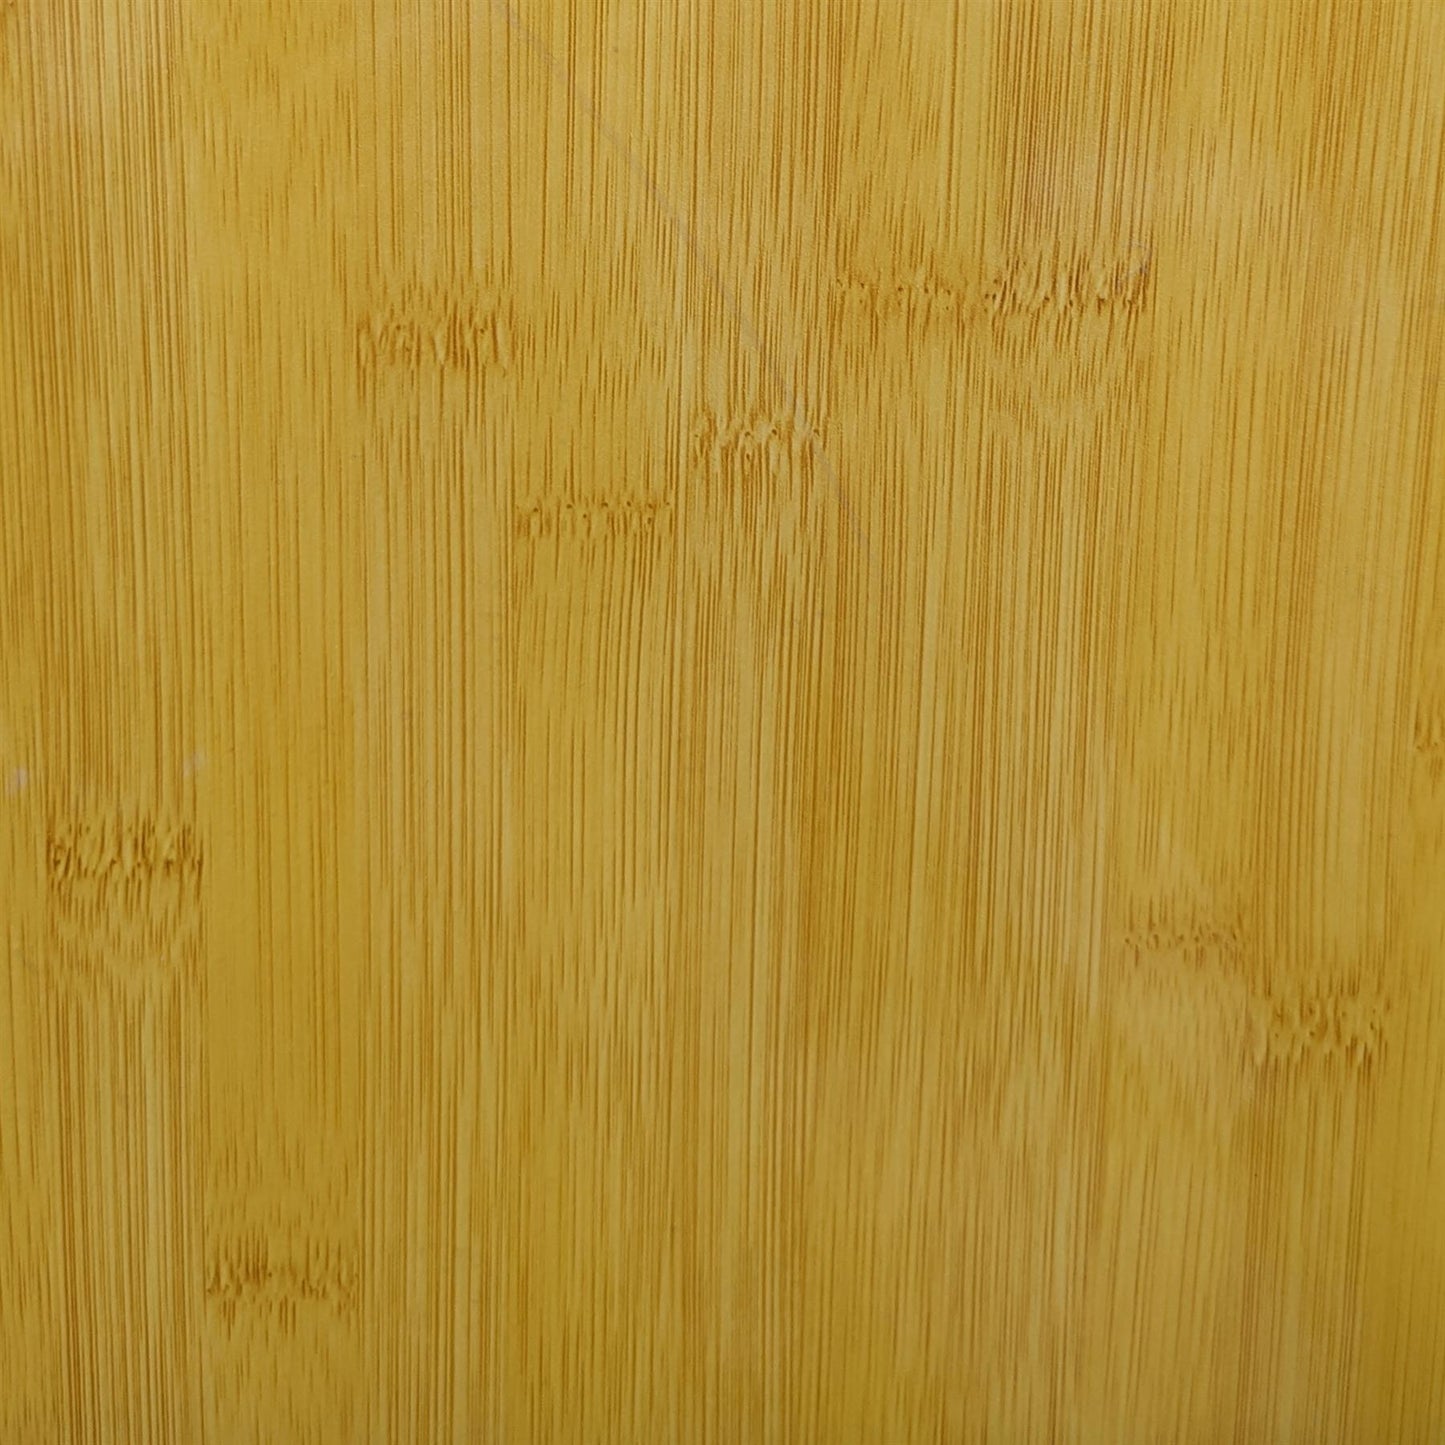 [Incudo] Bamboo Wood Effect Acrylic Sheet - 250x150x3mm